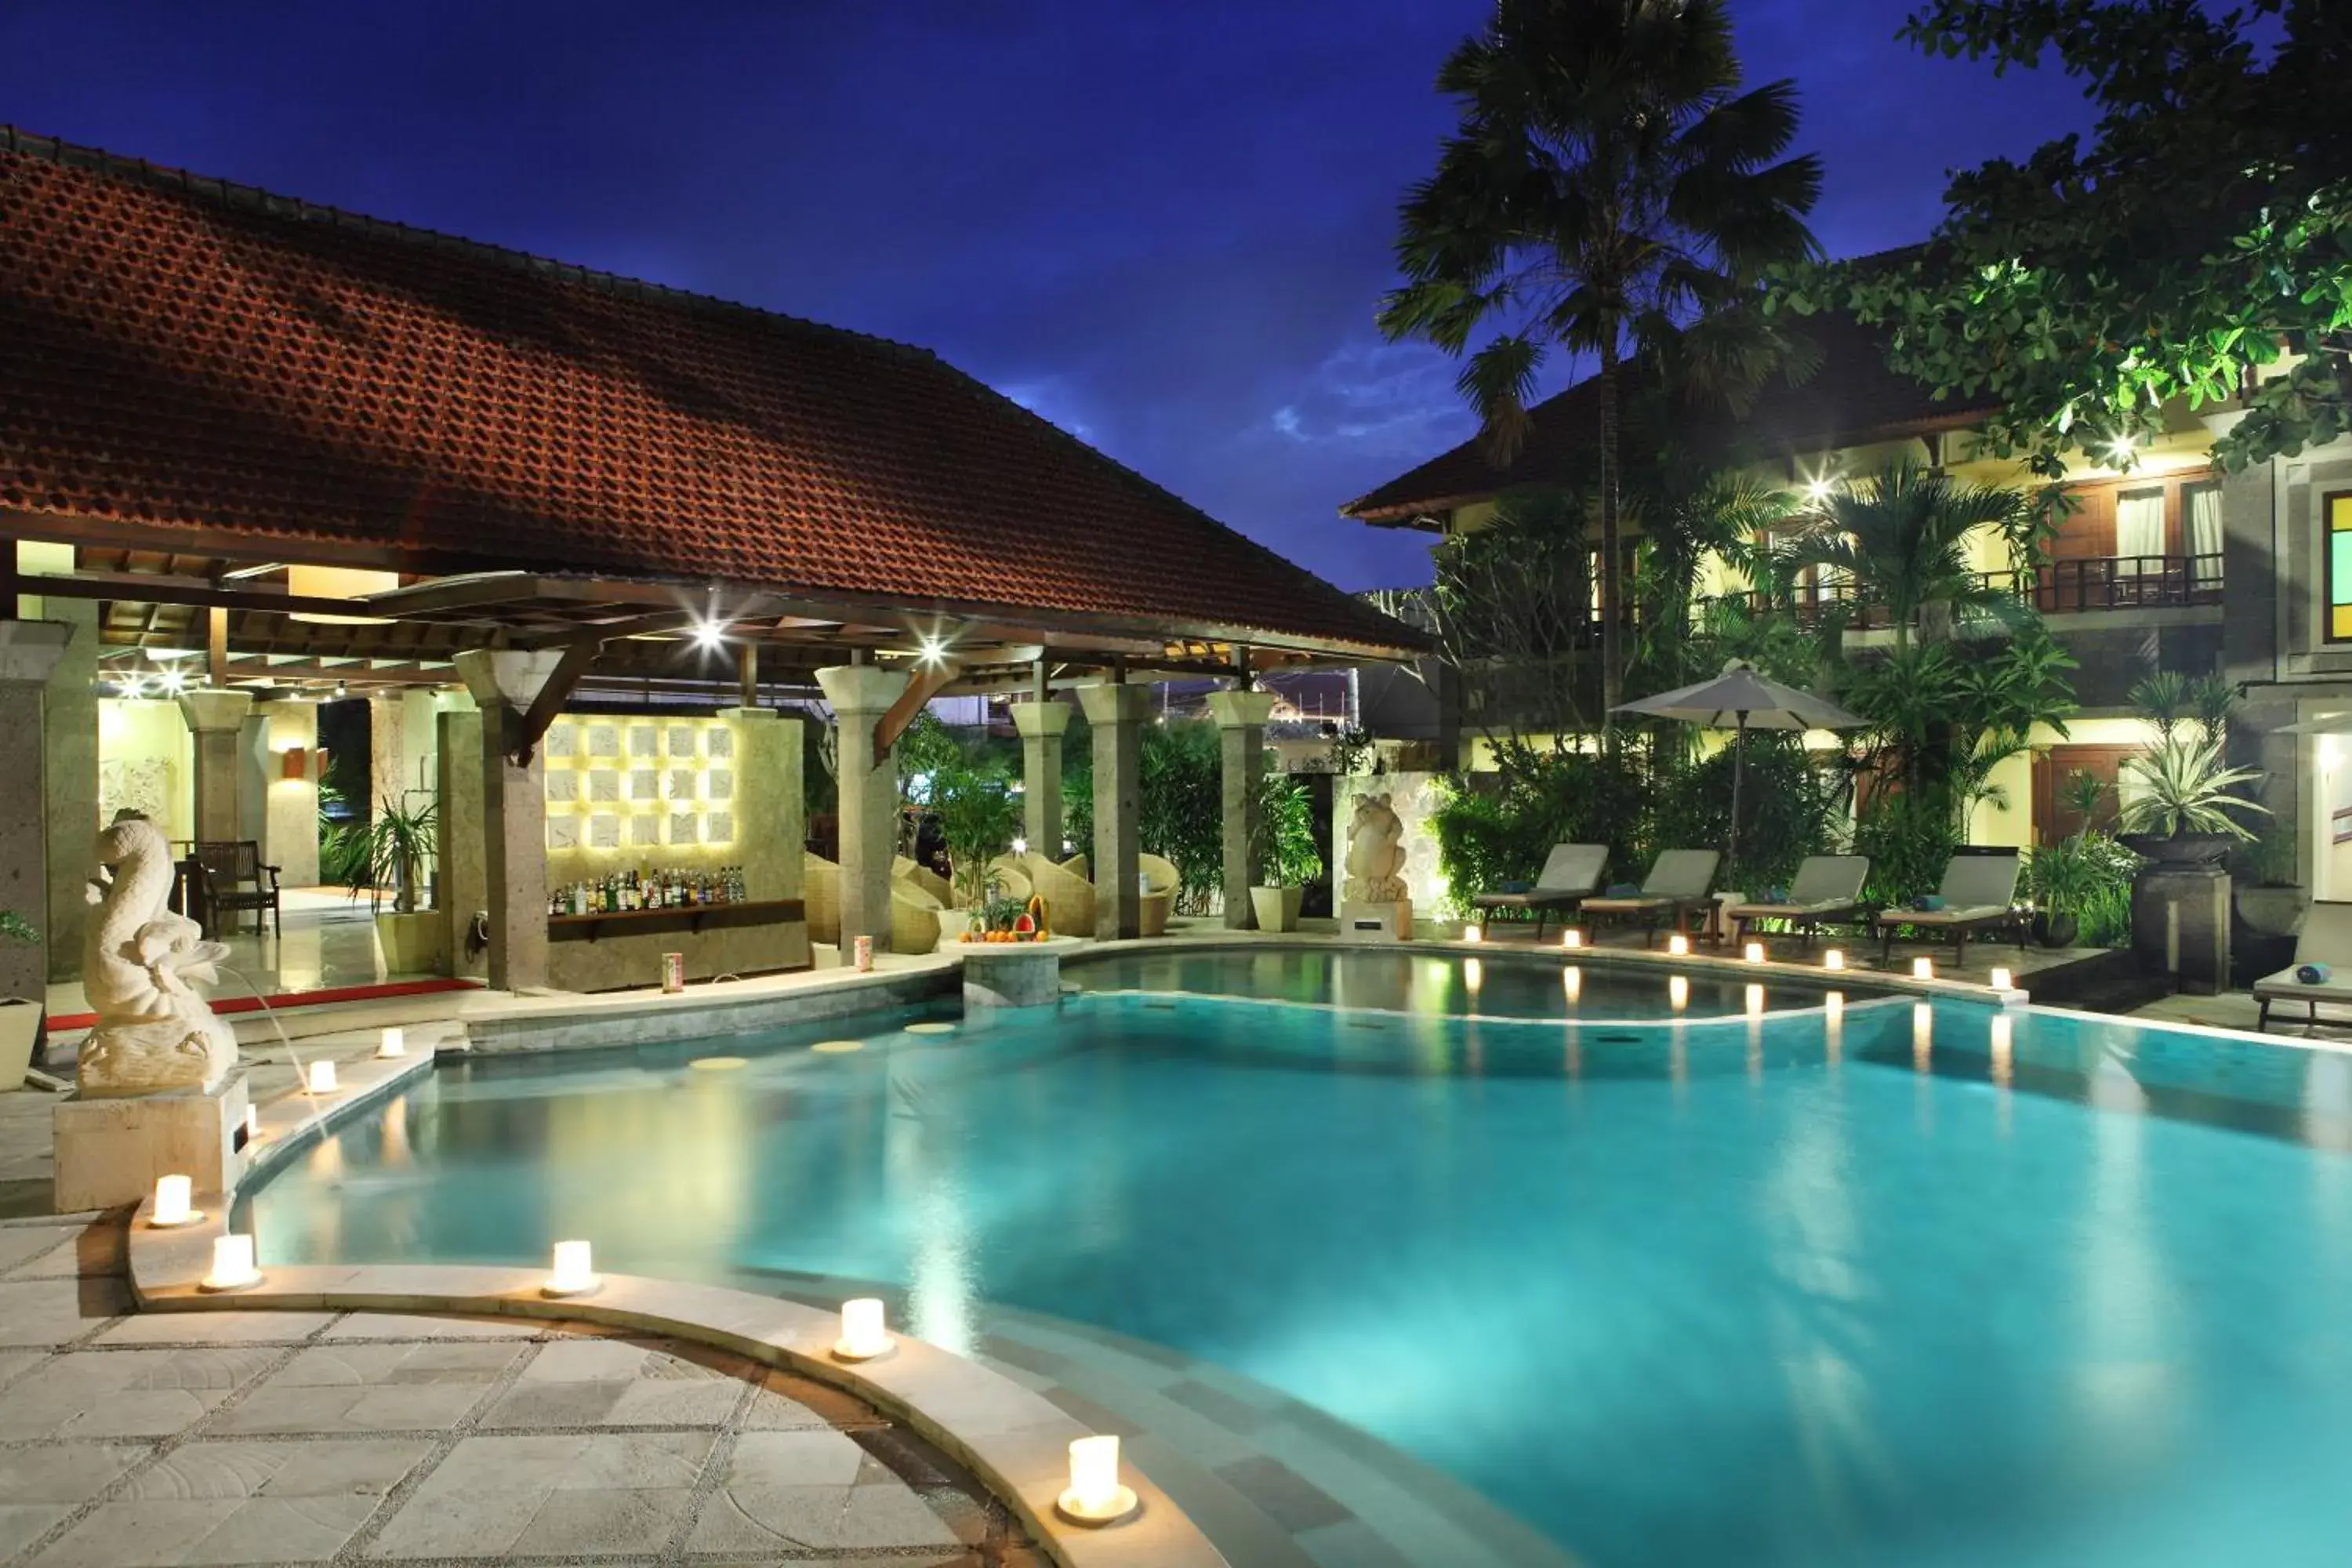 Swimming Pool in Adhi Jaya Hotel